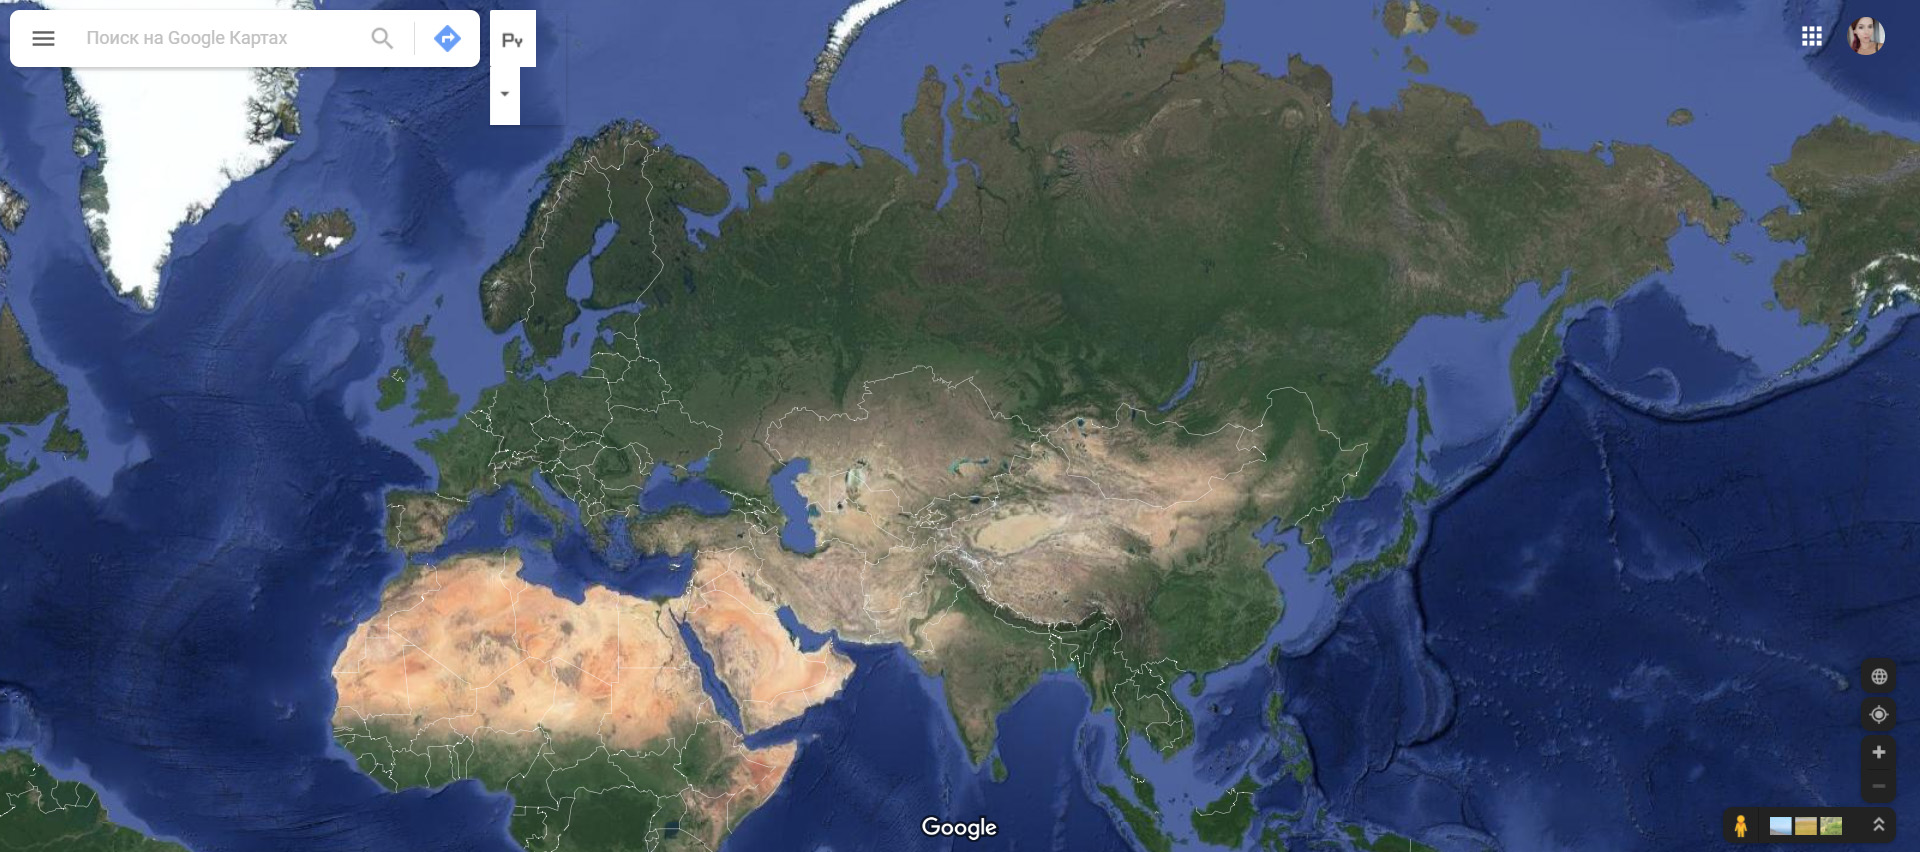 Топ сервисов для путешественника: Яндекс.Карты и Google.Карты 